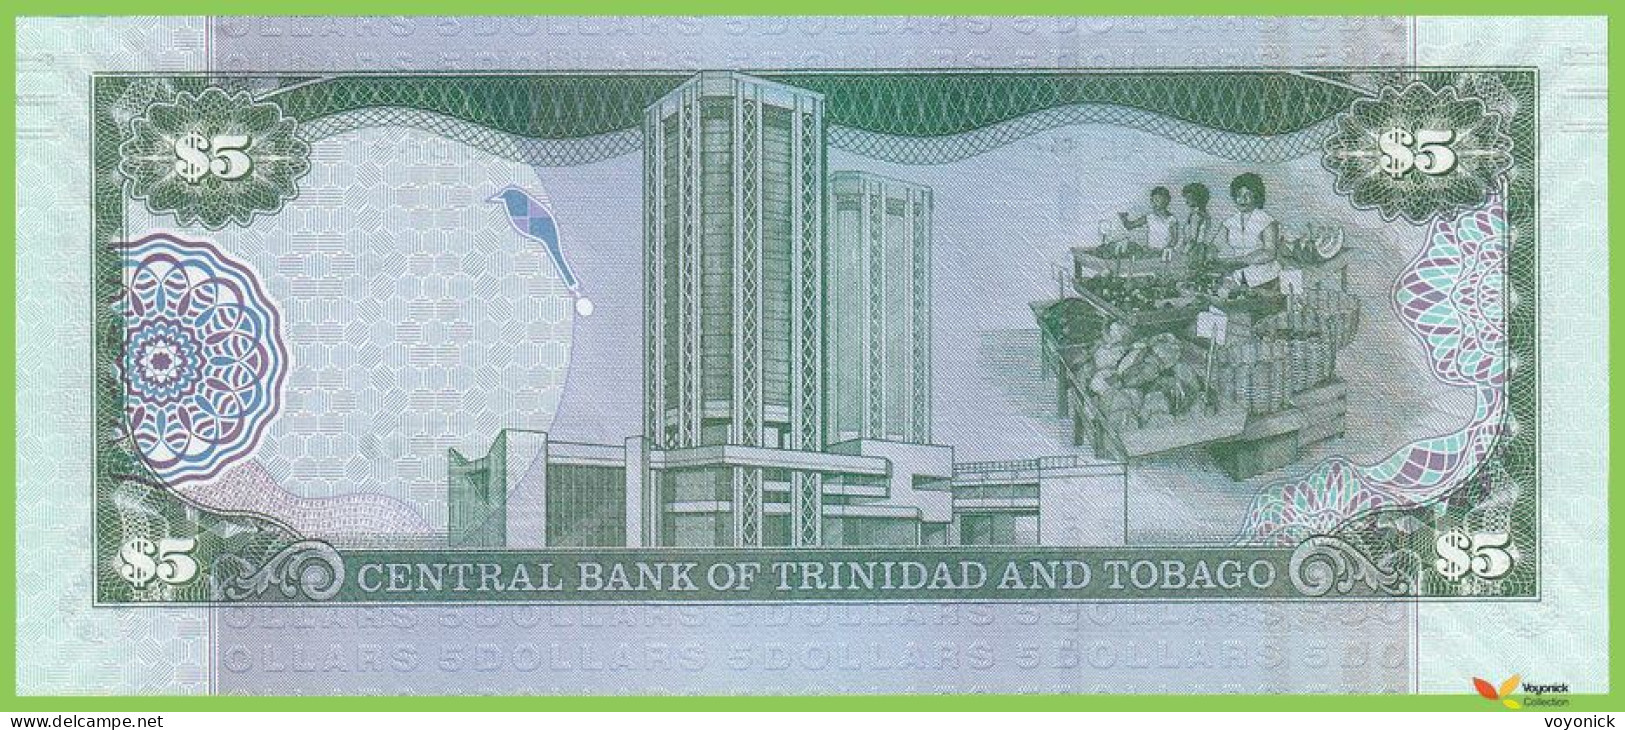 Voyo TRINIDAD & TOBAGO 5 Dollars 2006(2017) P47cr B229bz ZZ UNC Replacement - Trinidad & Tobago